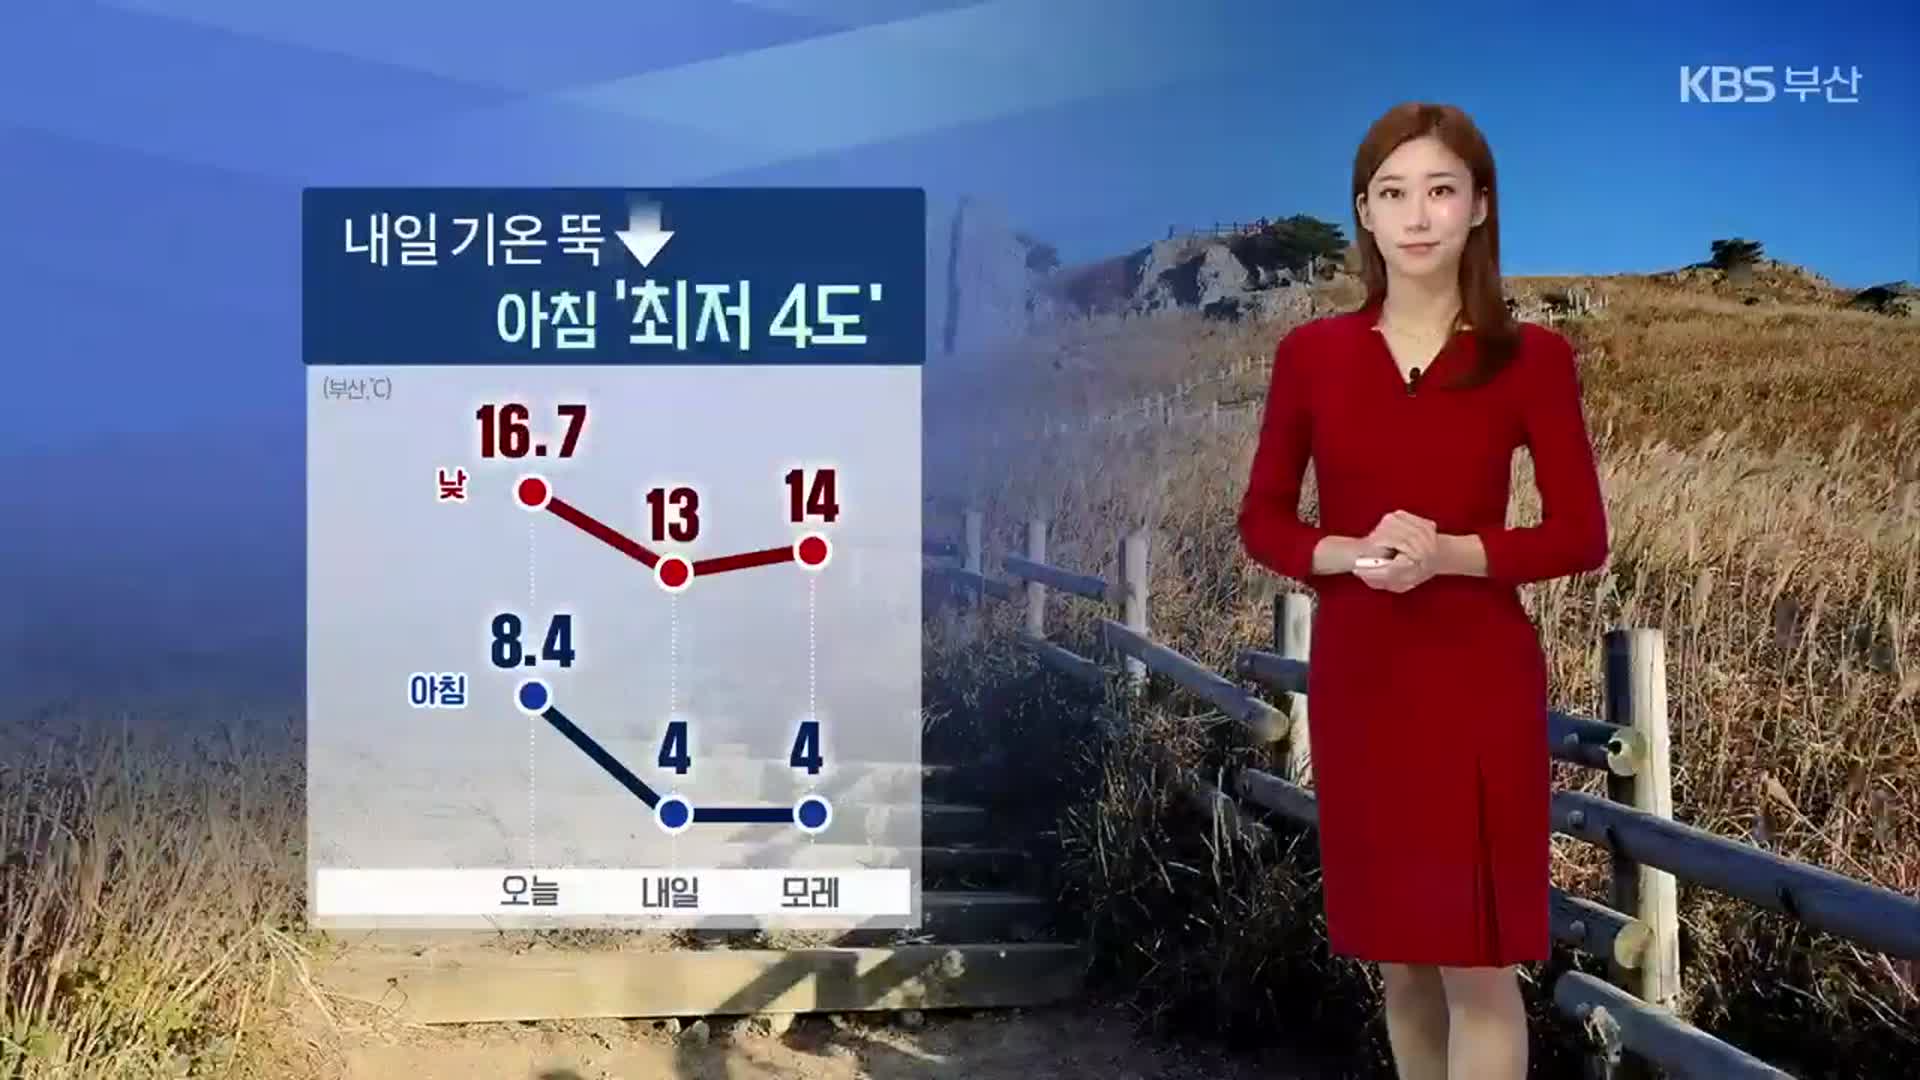 [날씨] 부산 내일 아침 ‘최저 4도’ 기온 뚝↓…건조주의보 발효